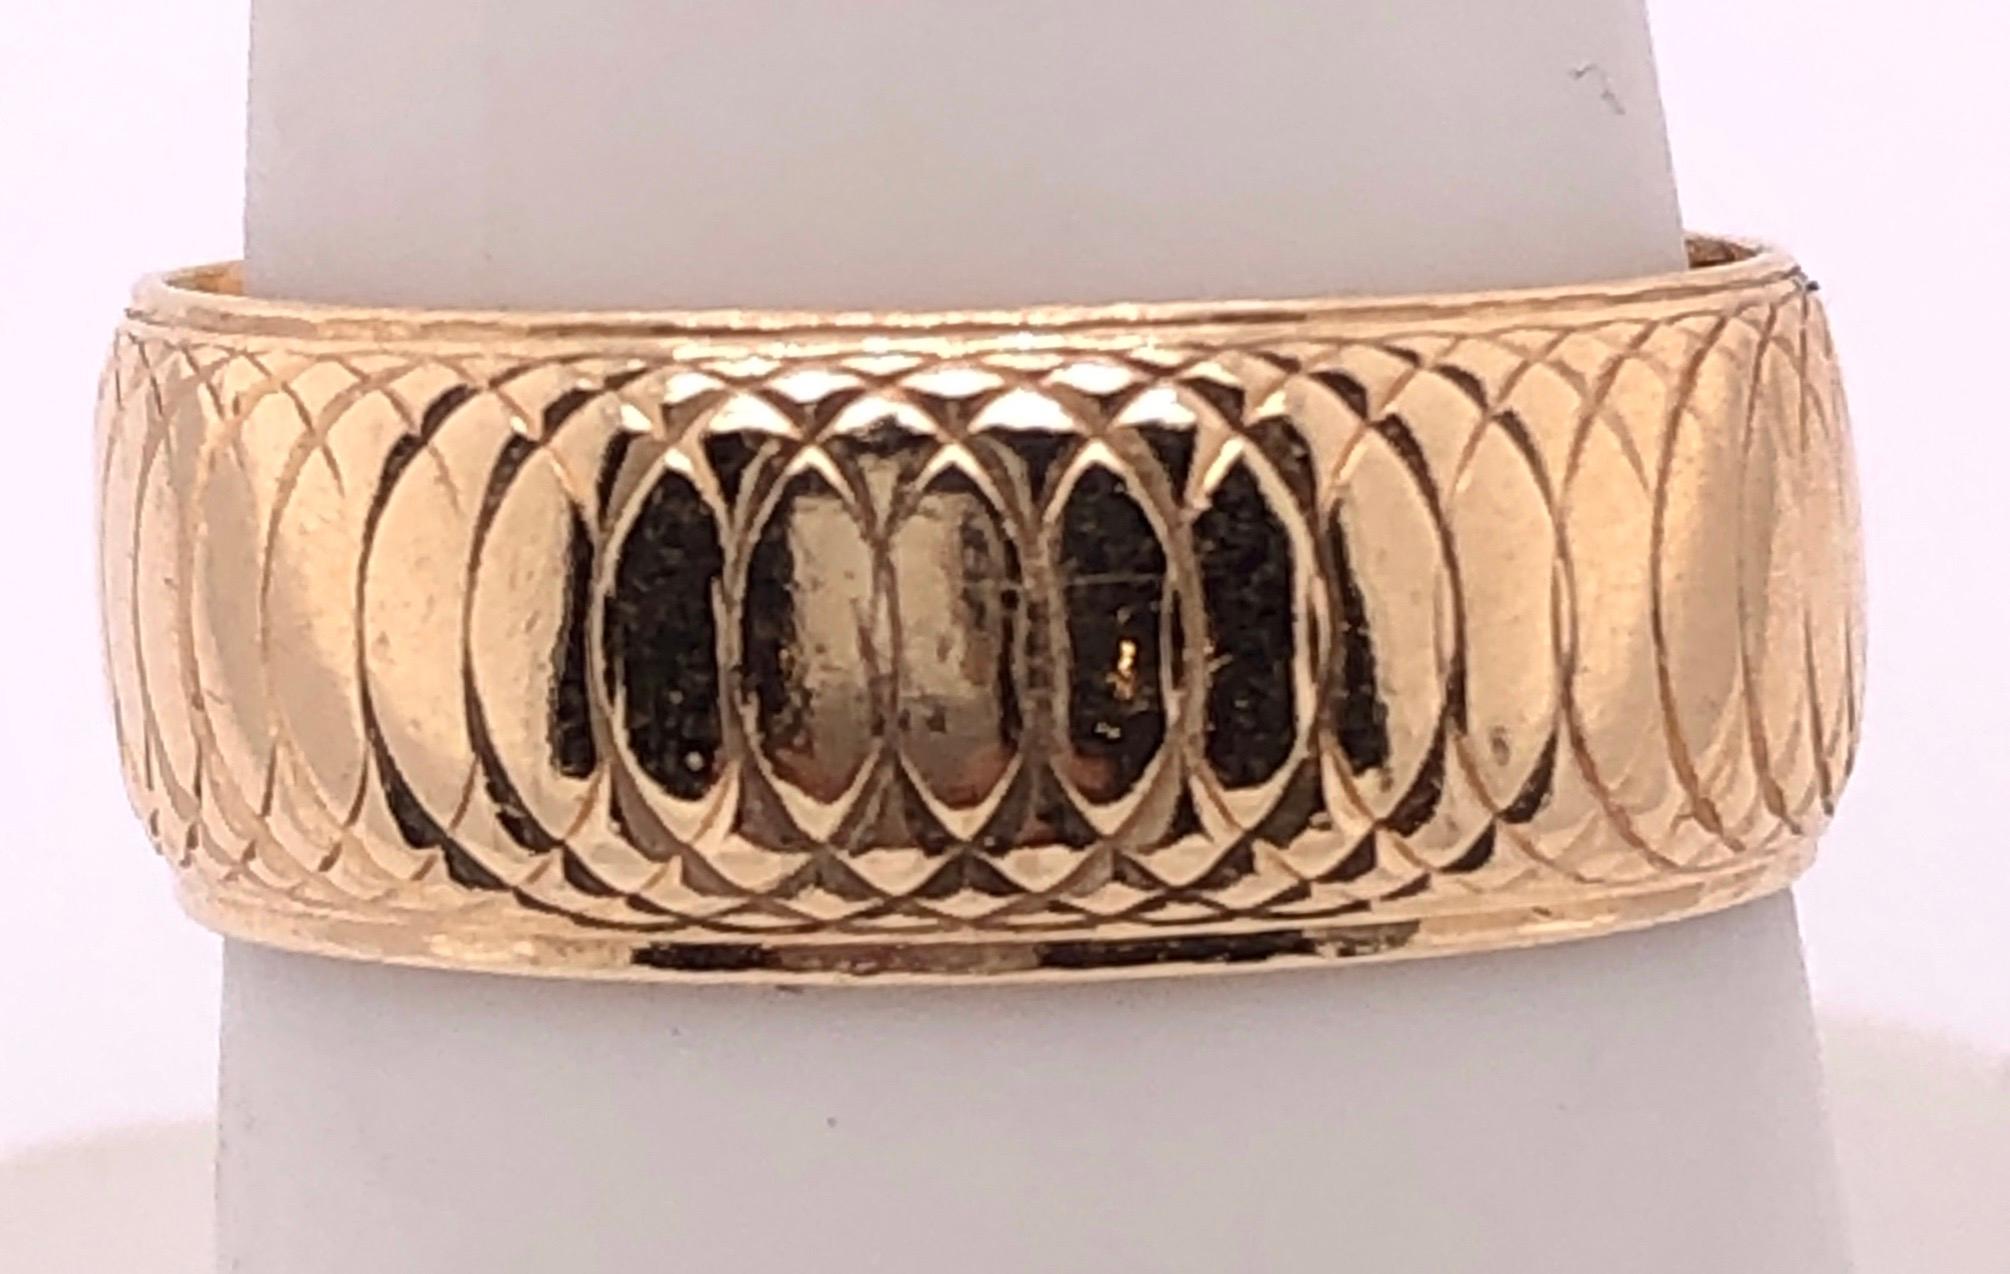 14 Karat Yellow Gold Wedding Ring/Band Size 8.
5.1 grams total weight.